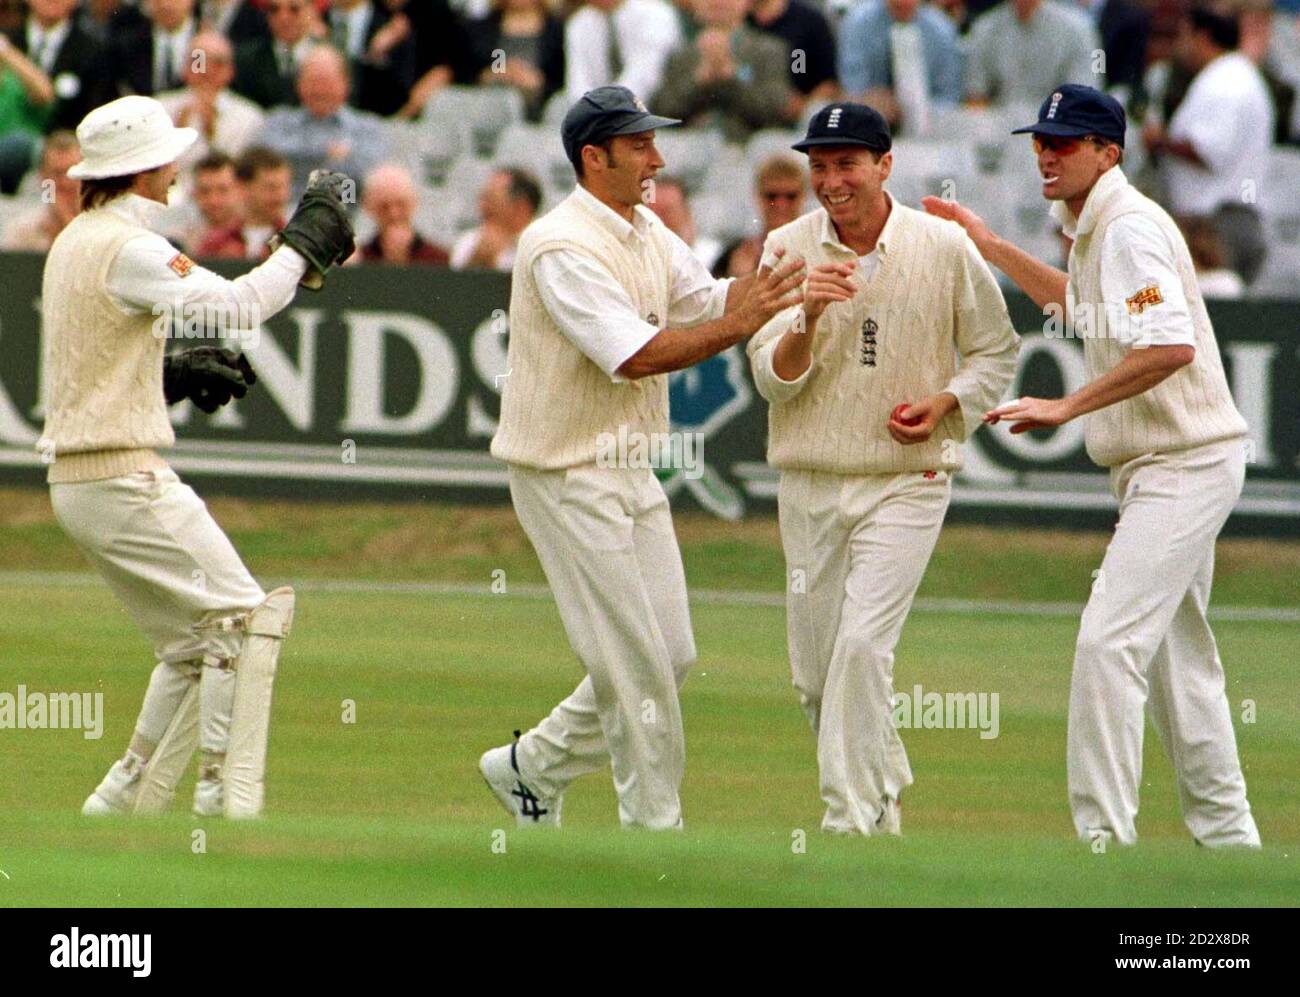 England gegen Pakistan; England Skipper Mike Atherton wird von seinen Teamkollegen gratuliert, nachdem er Saeed Anwar von der Bowling von Alan Mullally für 1 Lauf gefangen. PA Foto von Paul Barker. Stockfoto